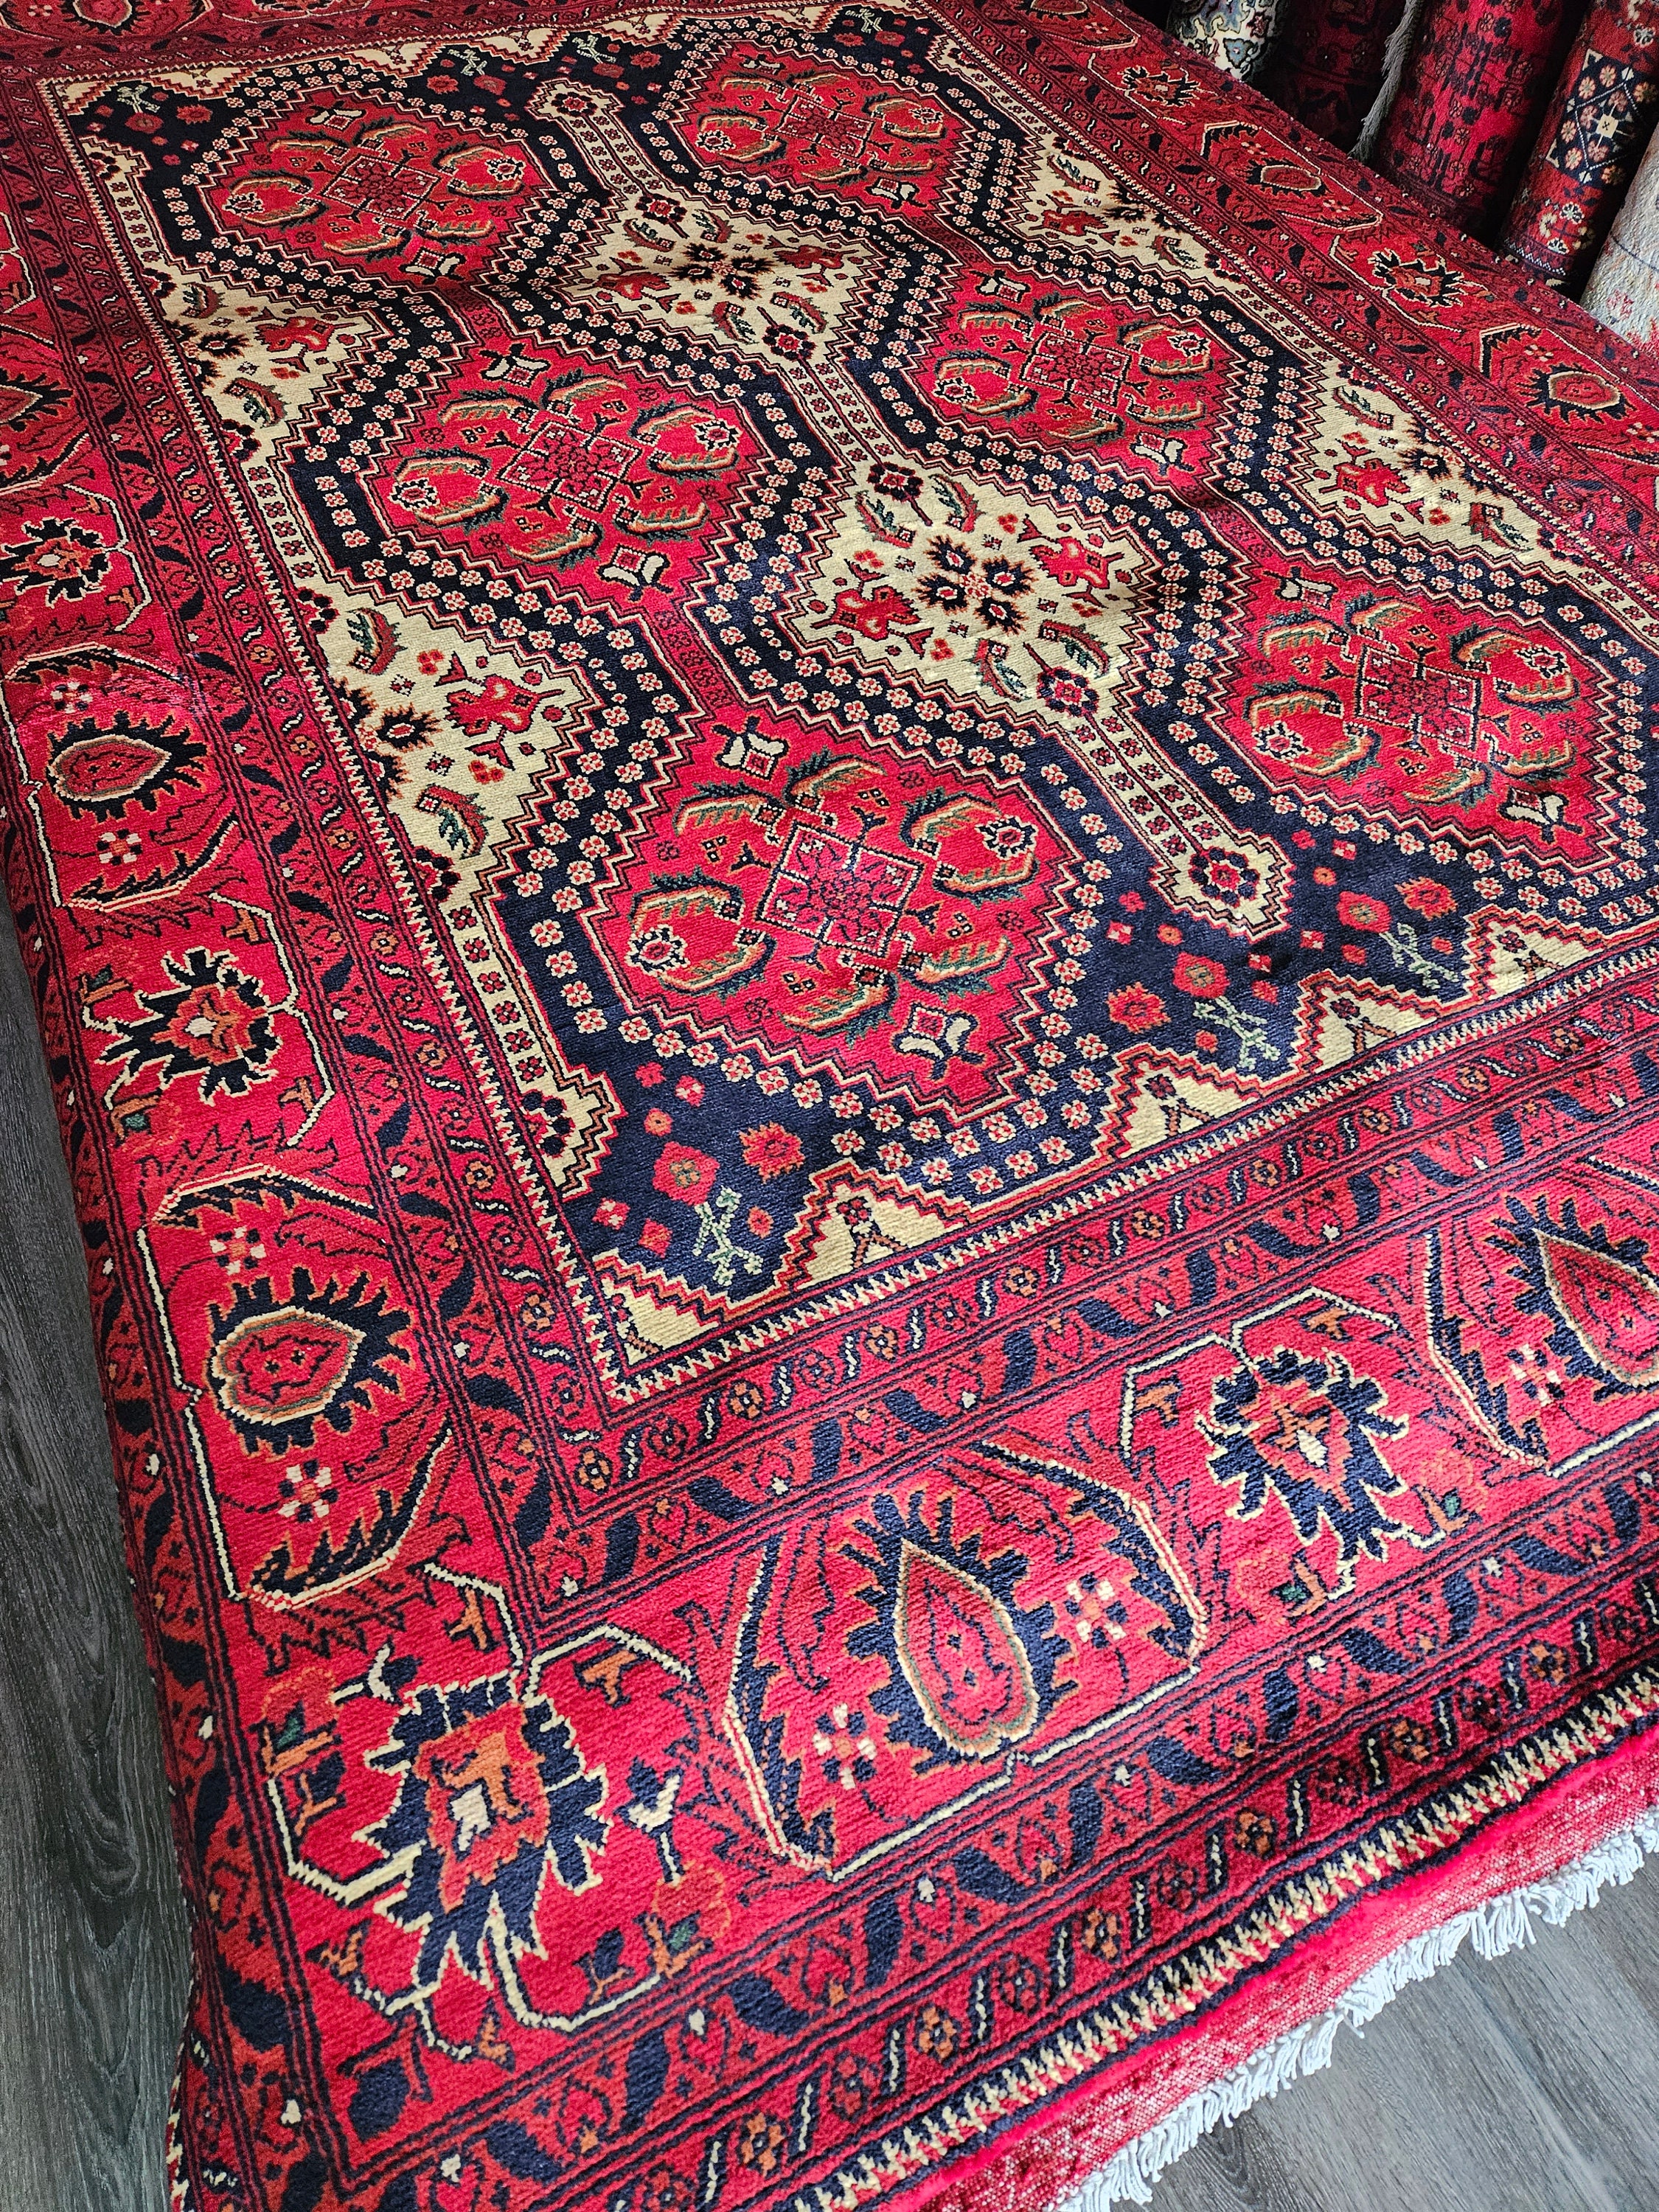 10x7 afghan Kargahi carpet rug persian rugs oriental rugs handmade baluch rug persian rug moroccan rug weaving rucarpet afghan